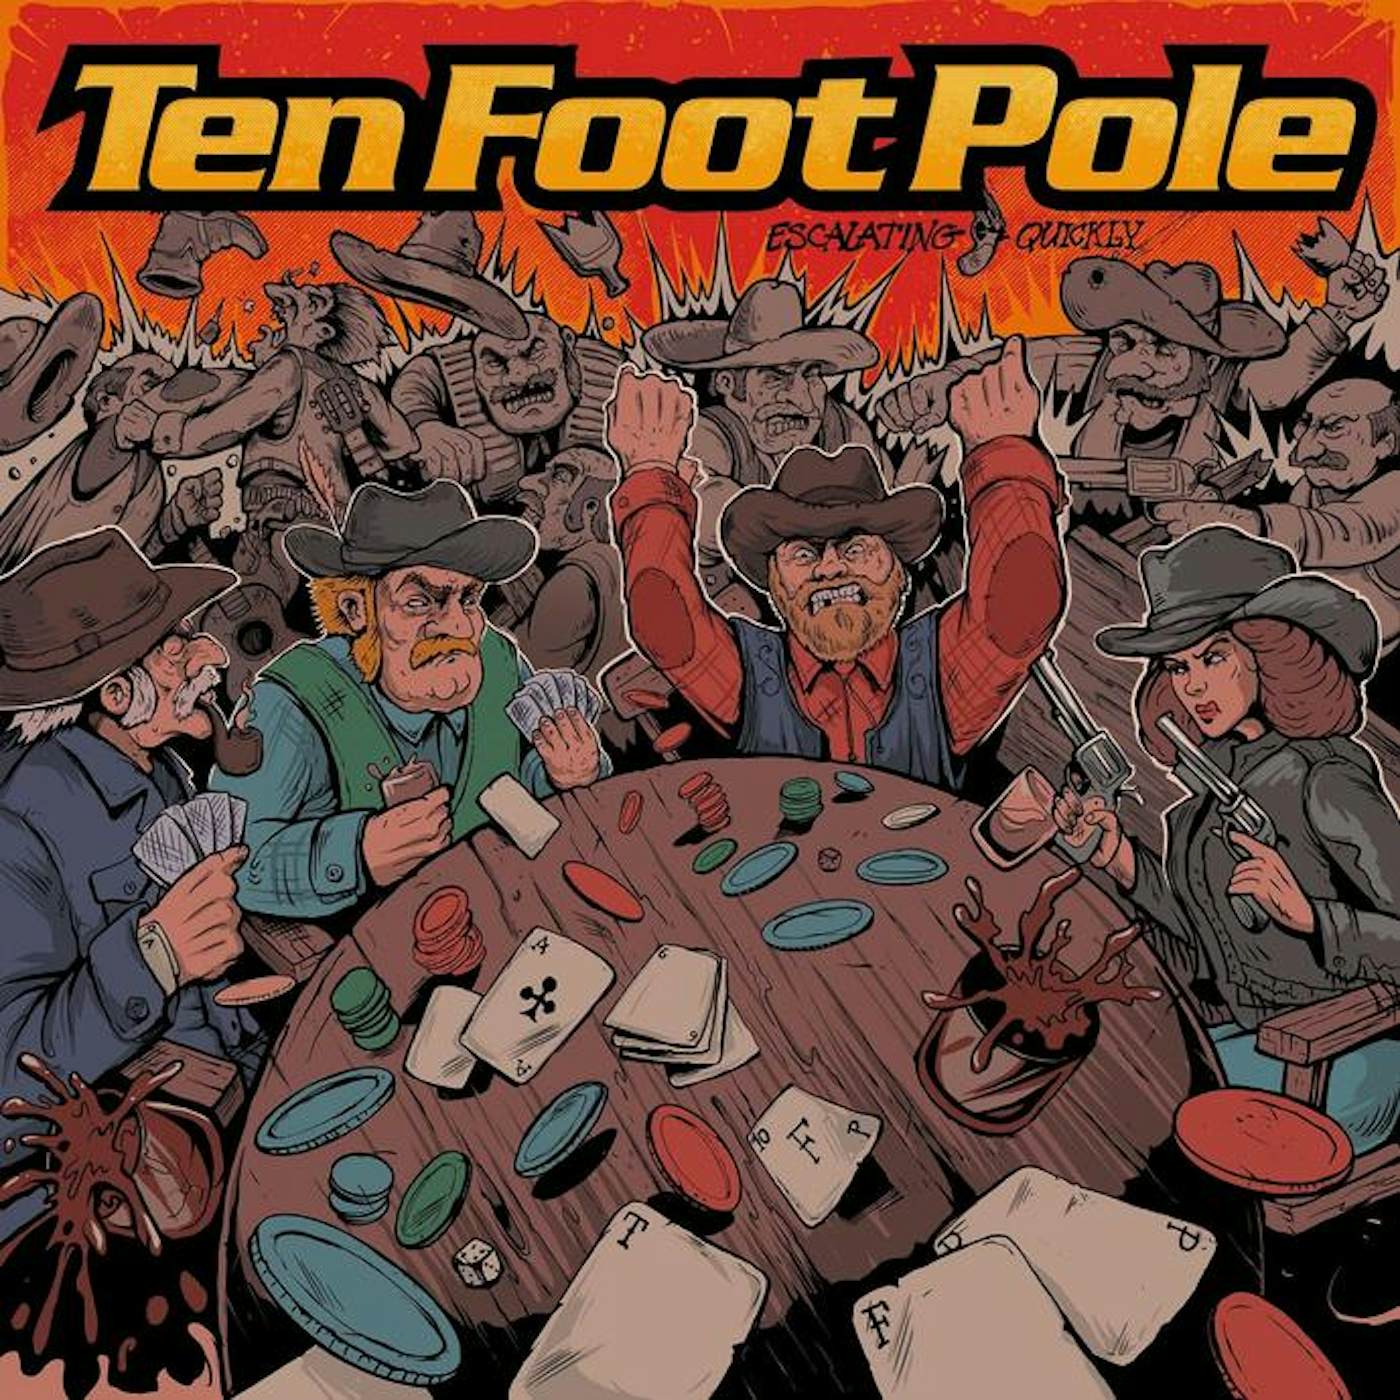 Ten Foot Pole ESCALATING QUICKLY Vinyl Record